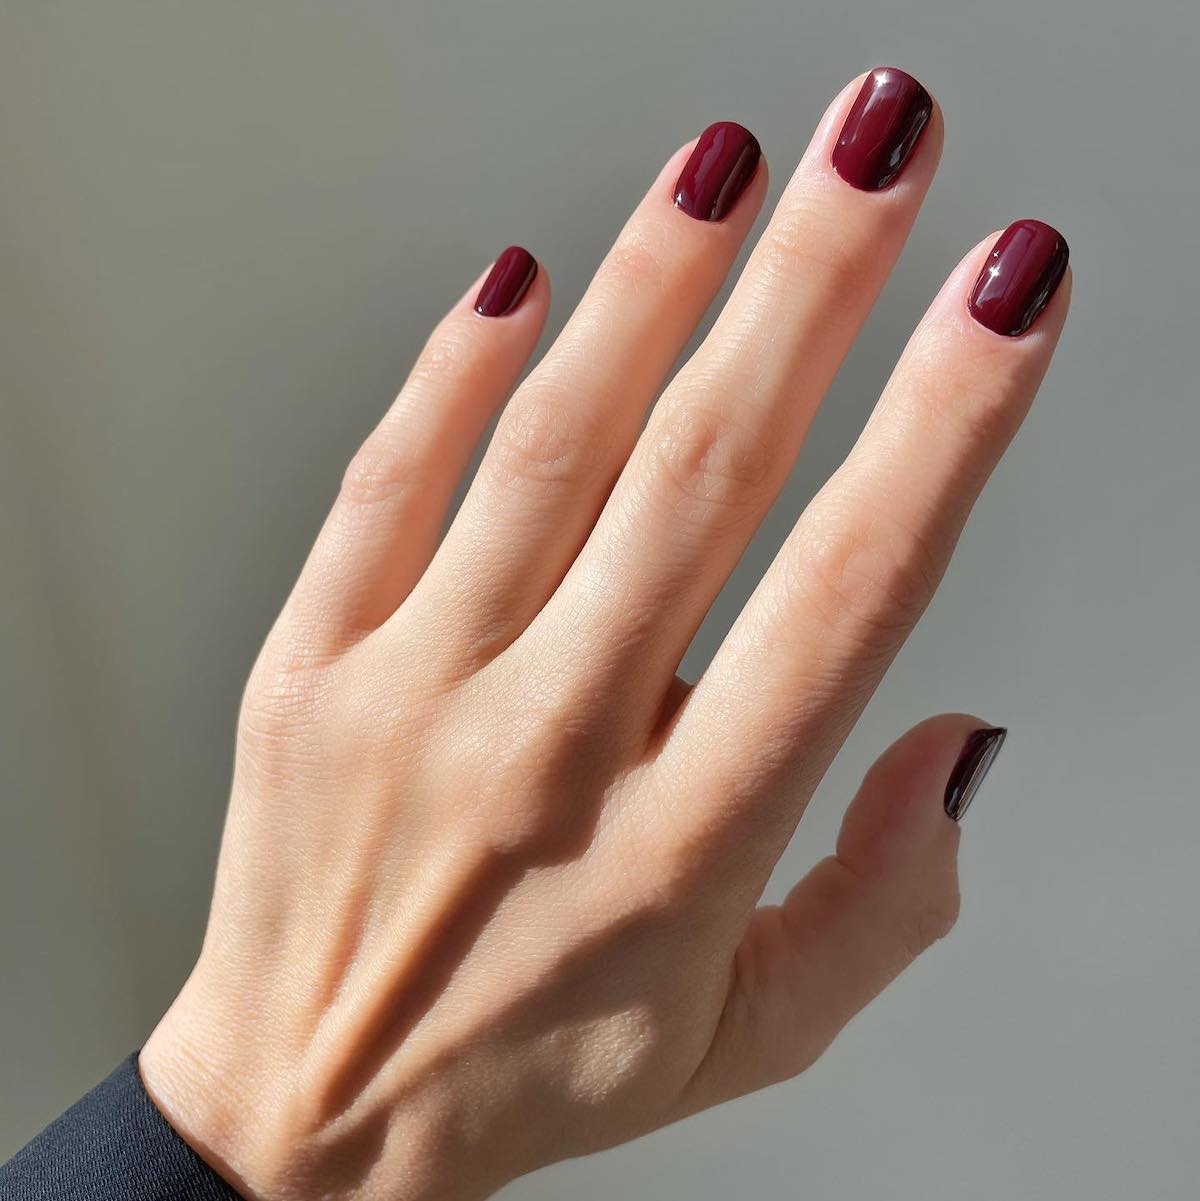 Burgundy red nail polish